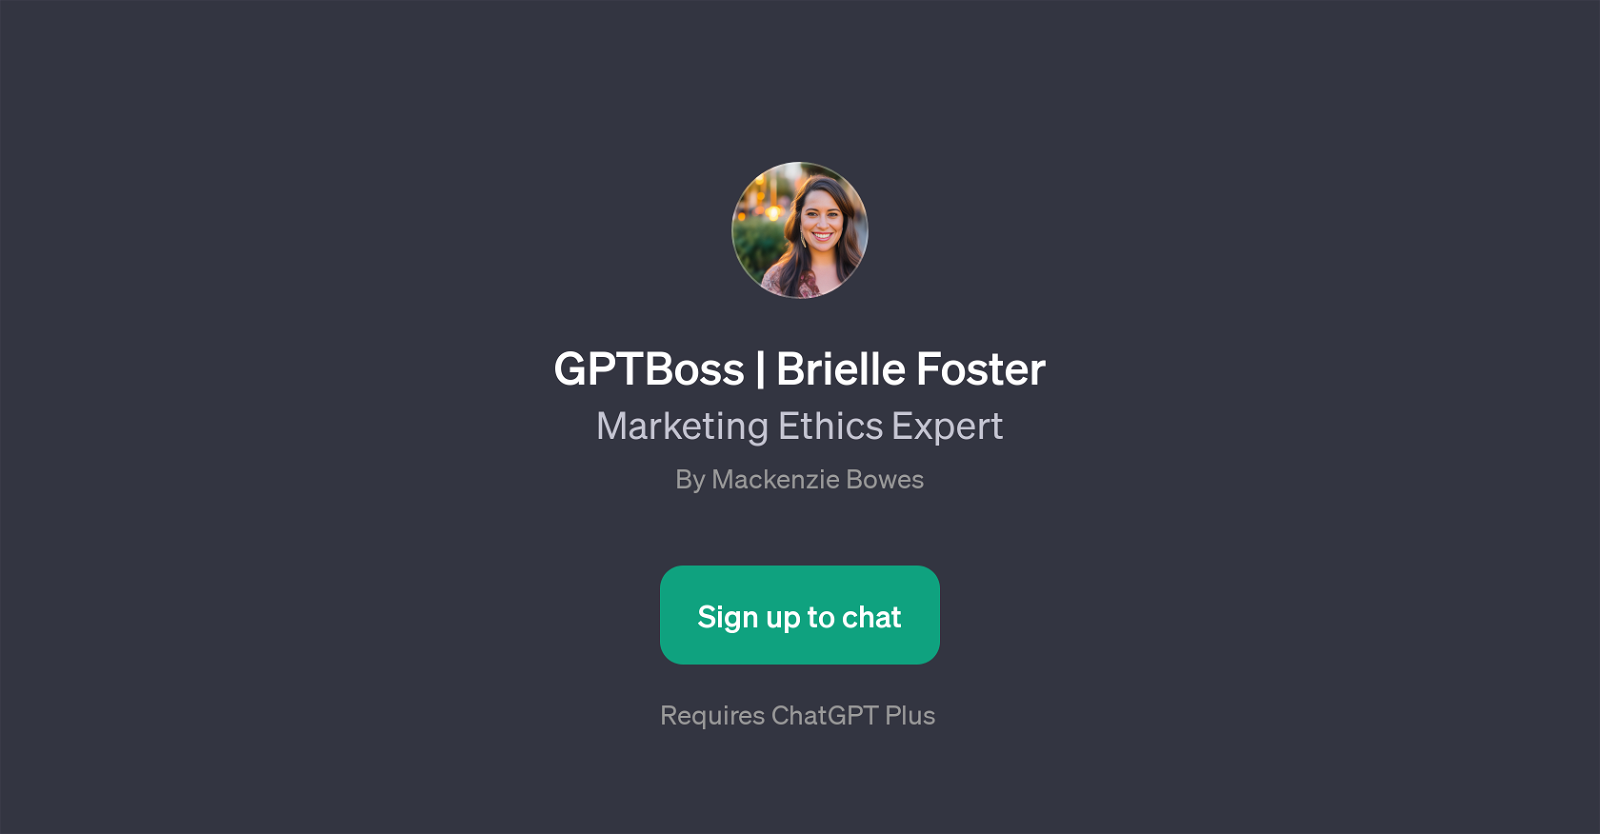 GPTBoss | Brielle Foster website